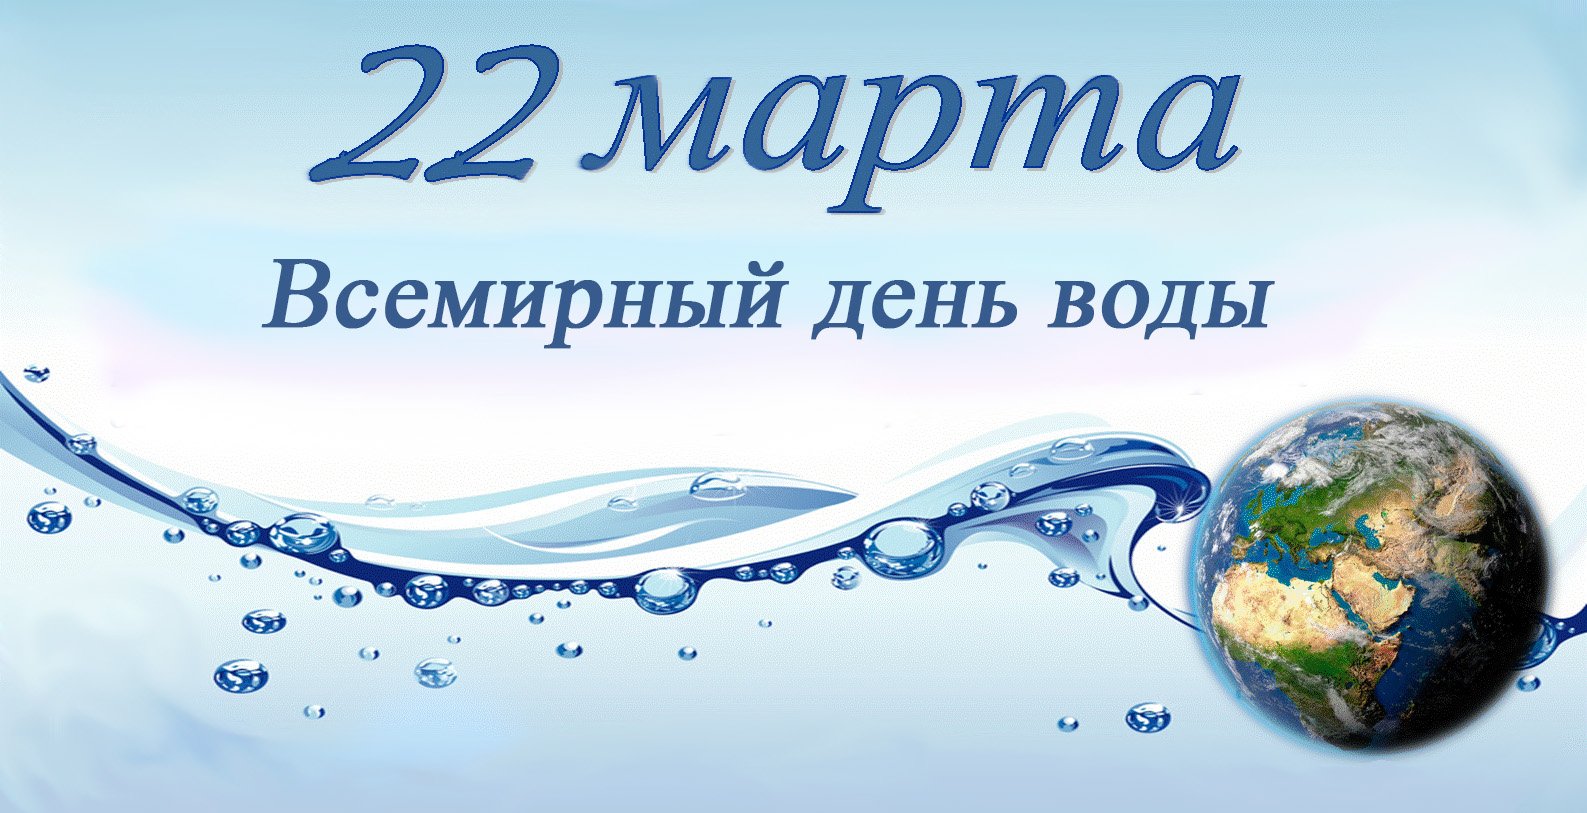 Статья всемирный день воды. Всемирный день воды. День водных ресурсов. Всемирный день водных ресурсов.